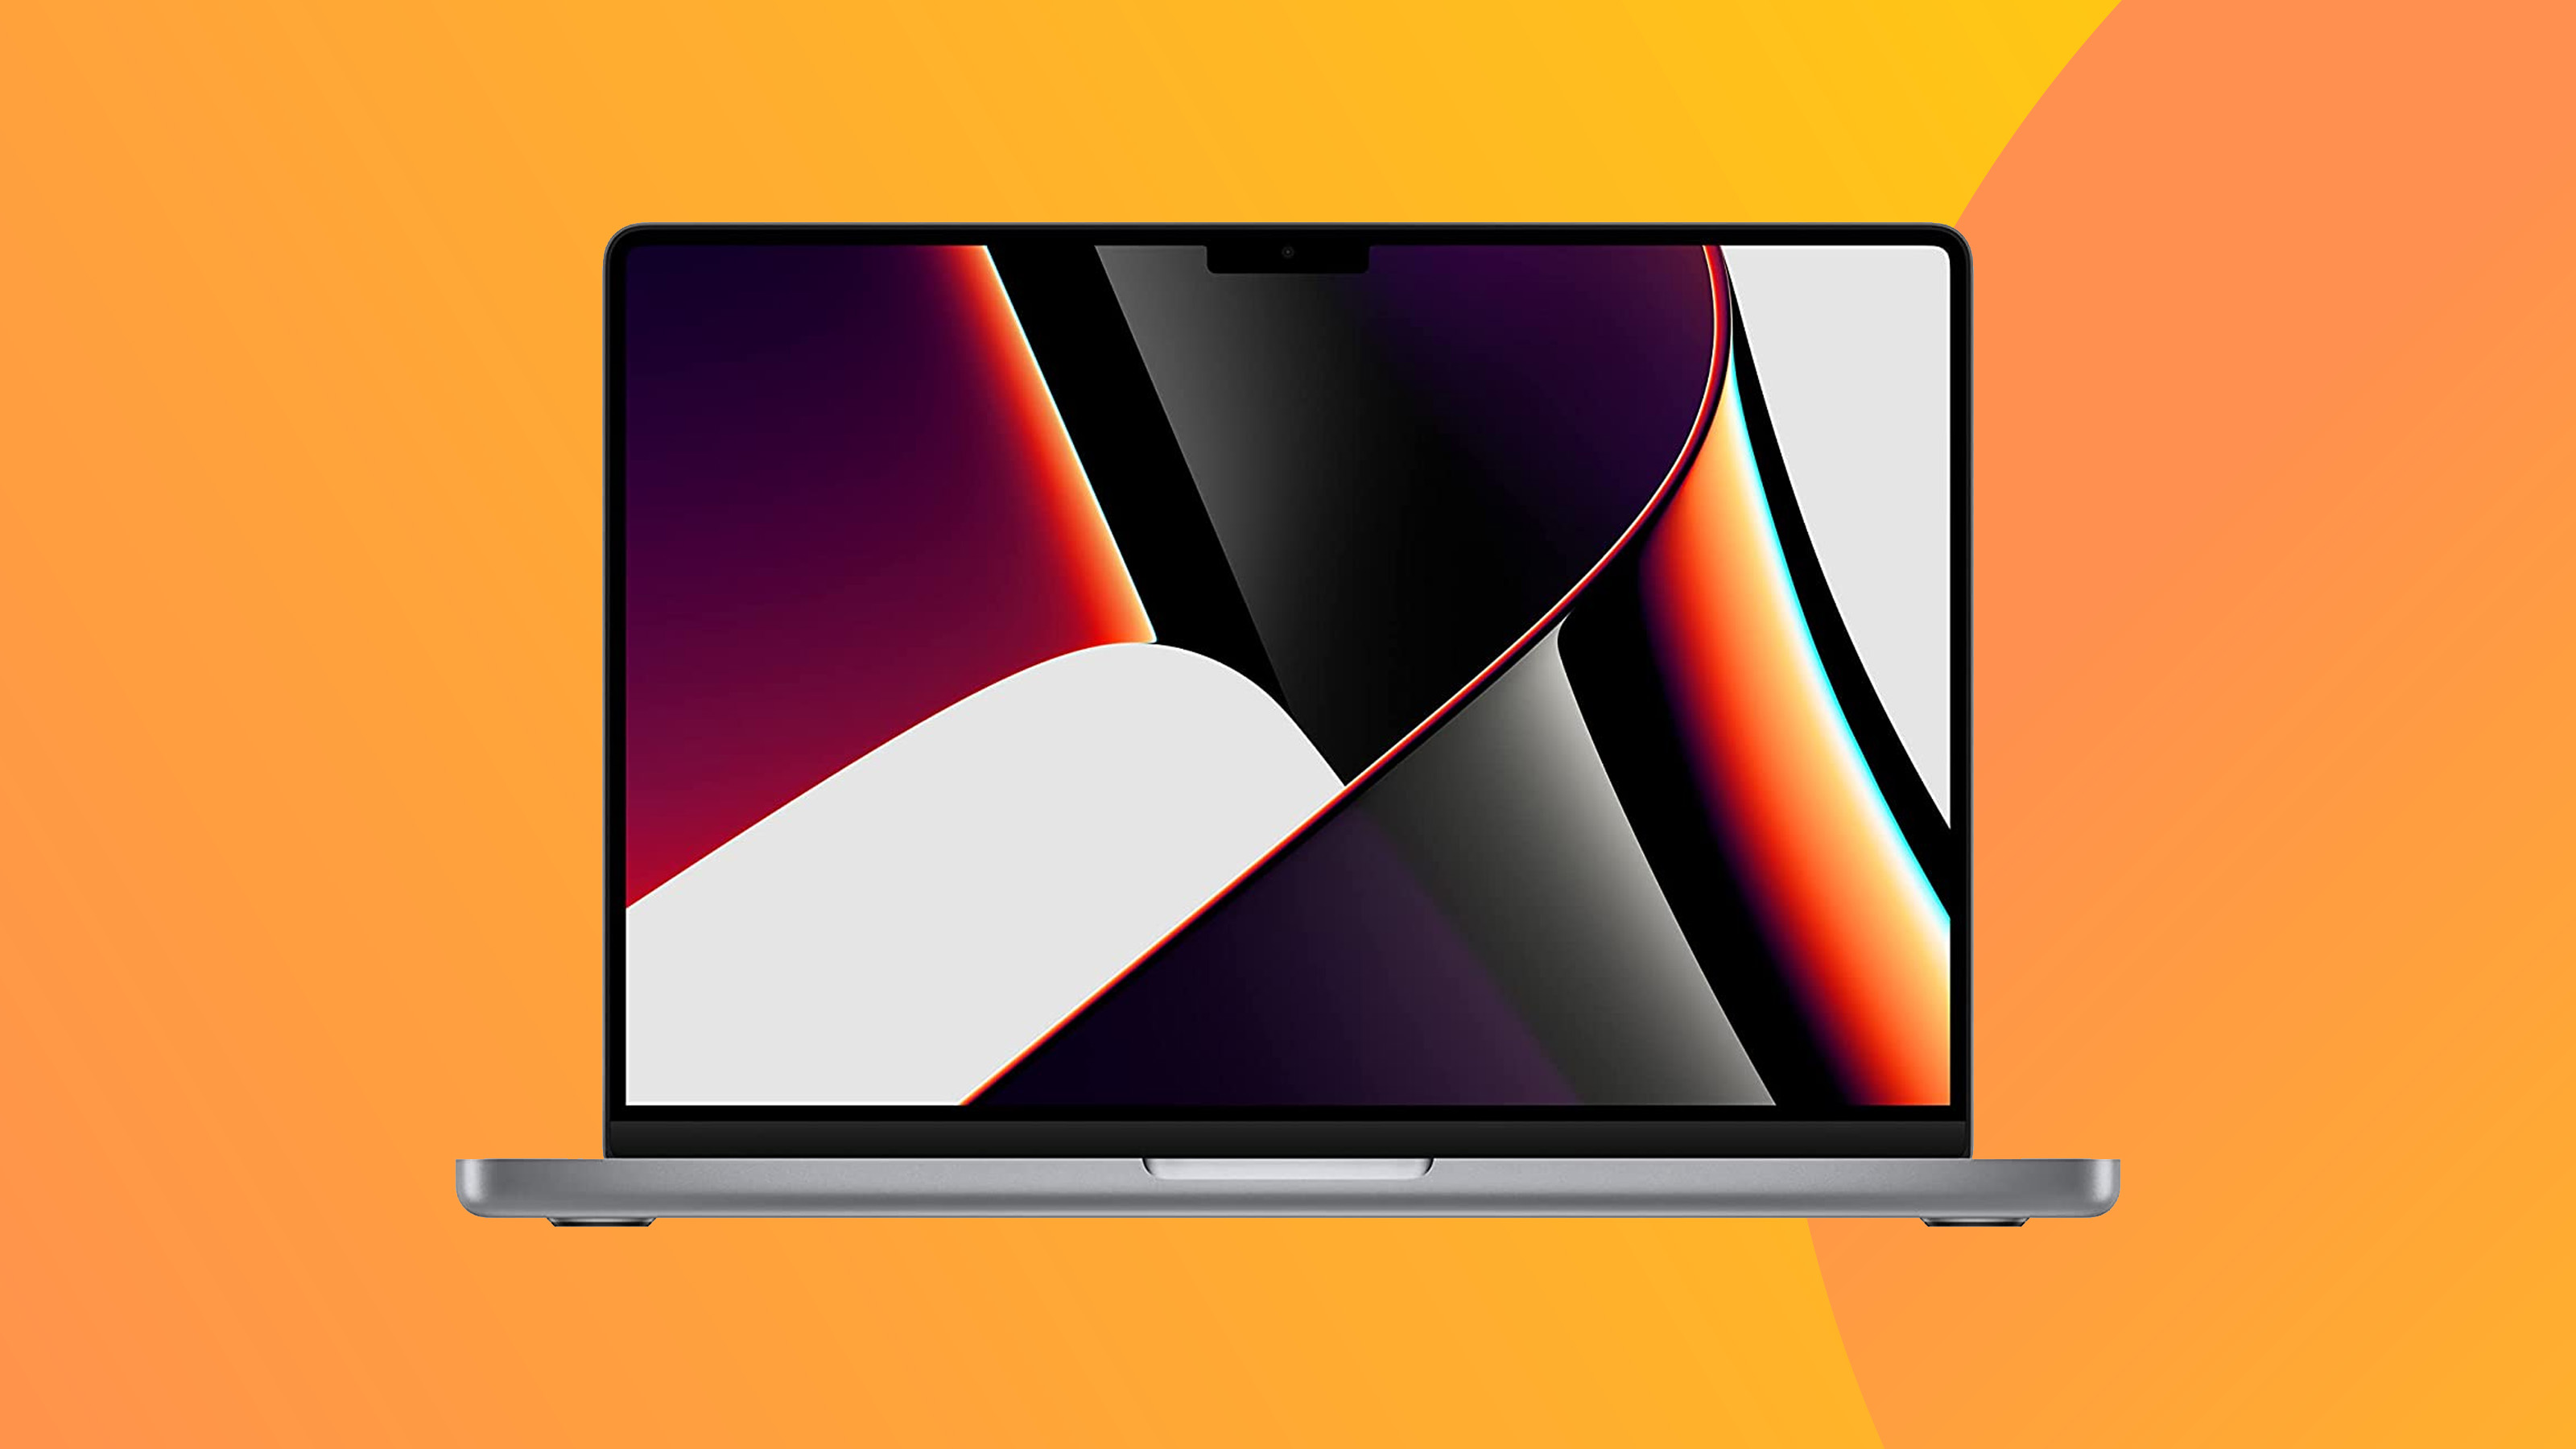 Снимок продукта Macbook Pro 2021 года на красочном фоне.